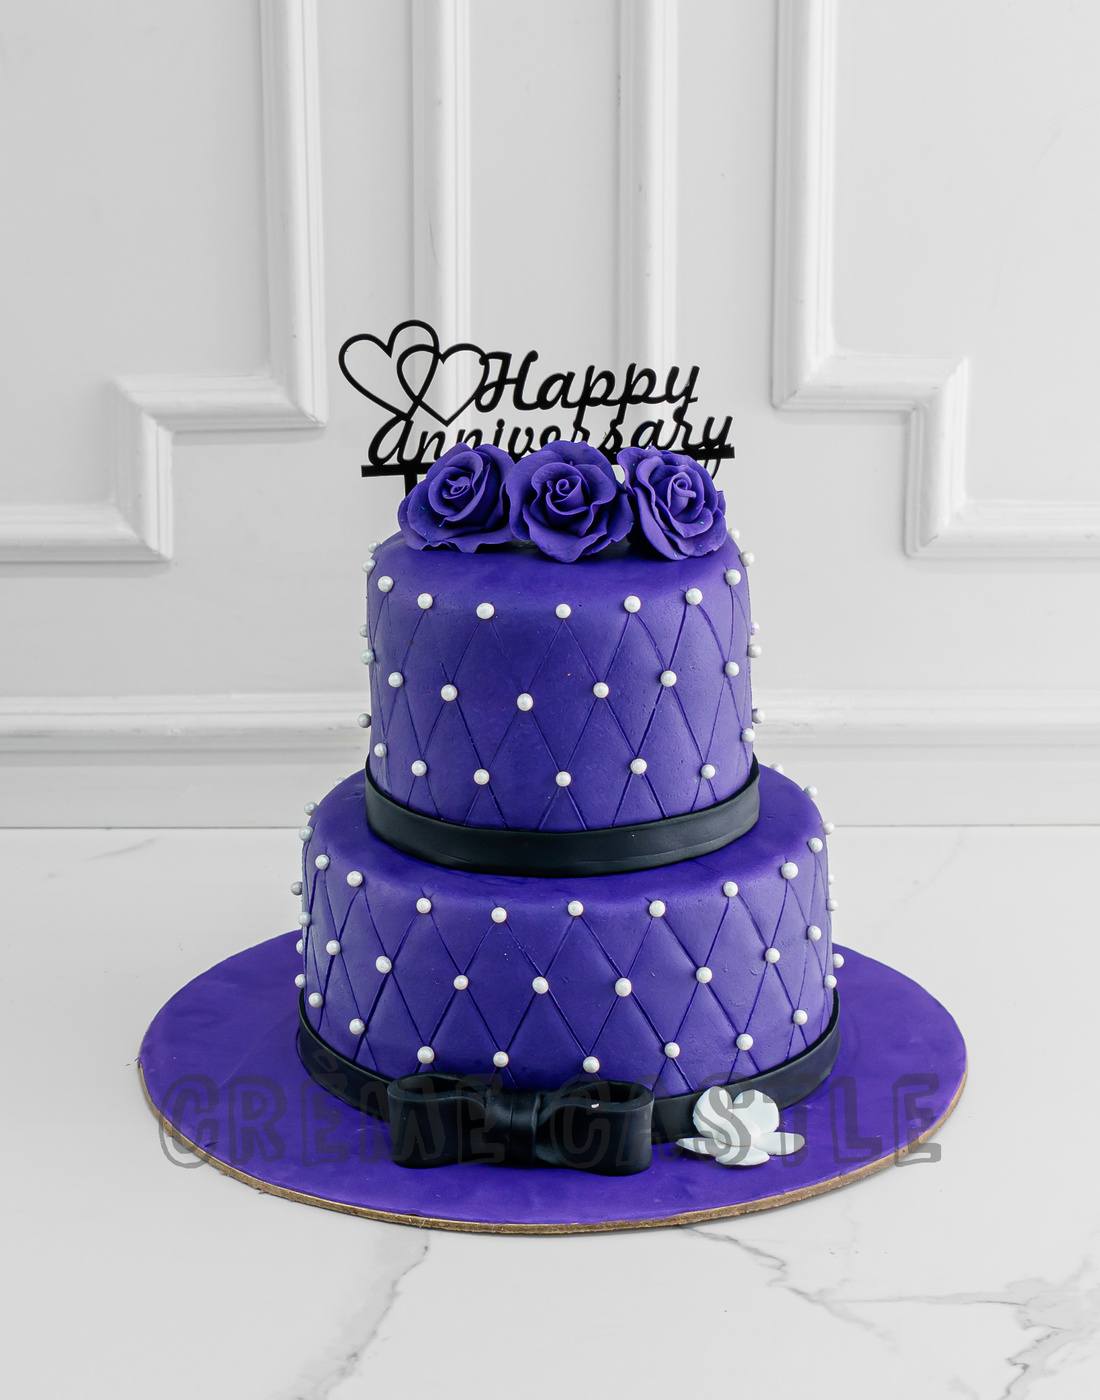 Quilt Pattern Wedding Cake